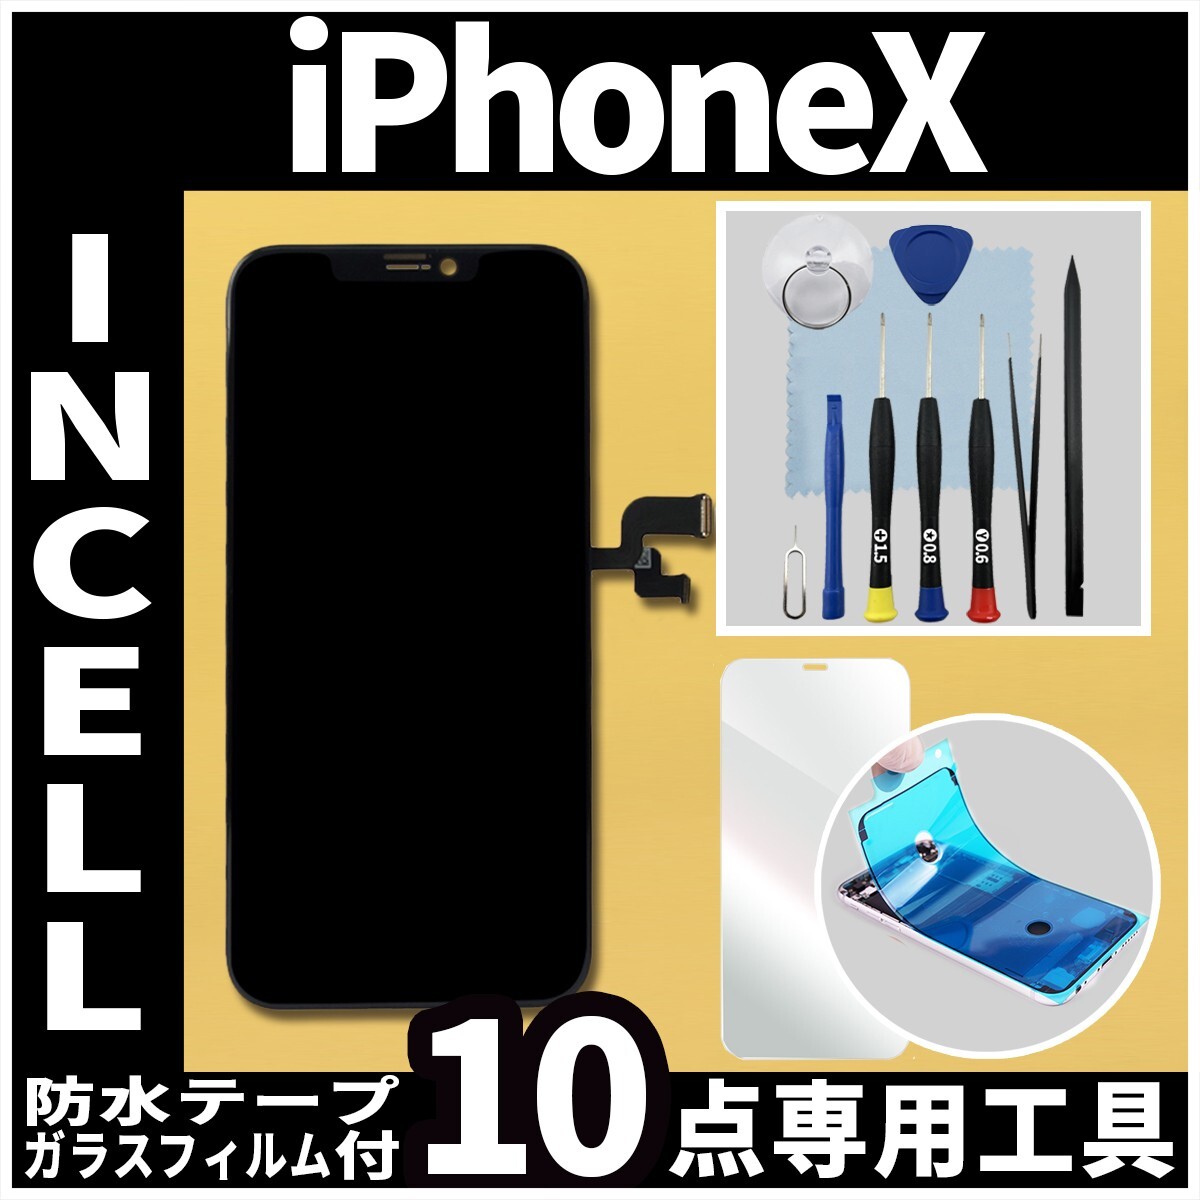 フロントパネル iPhoneX Incell コピーパネル 高品質 防水テープ 修理工具 互換 液晶 修理 iphone ガラス割れ 画面割れ ディスプレイ_画像1